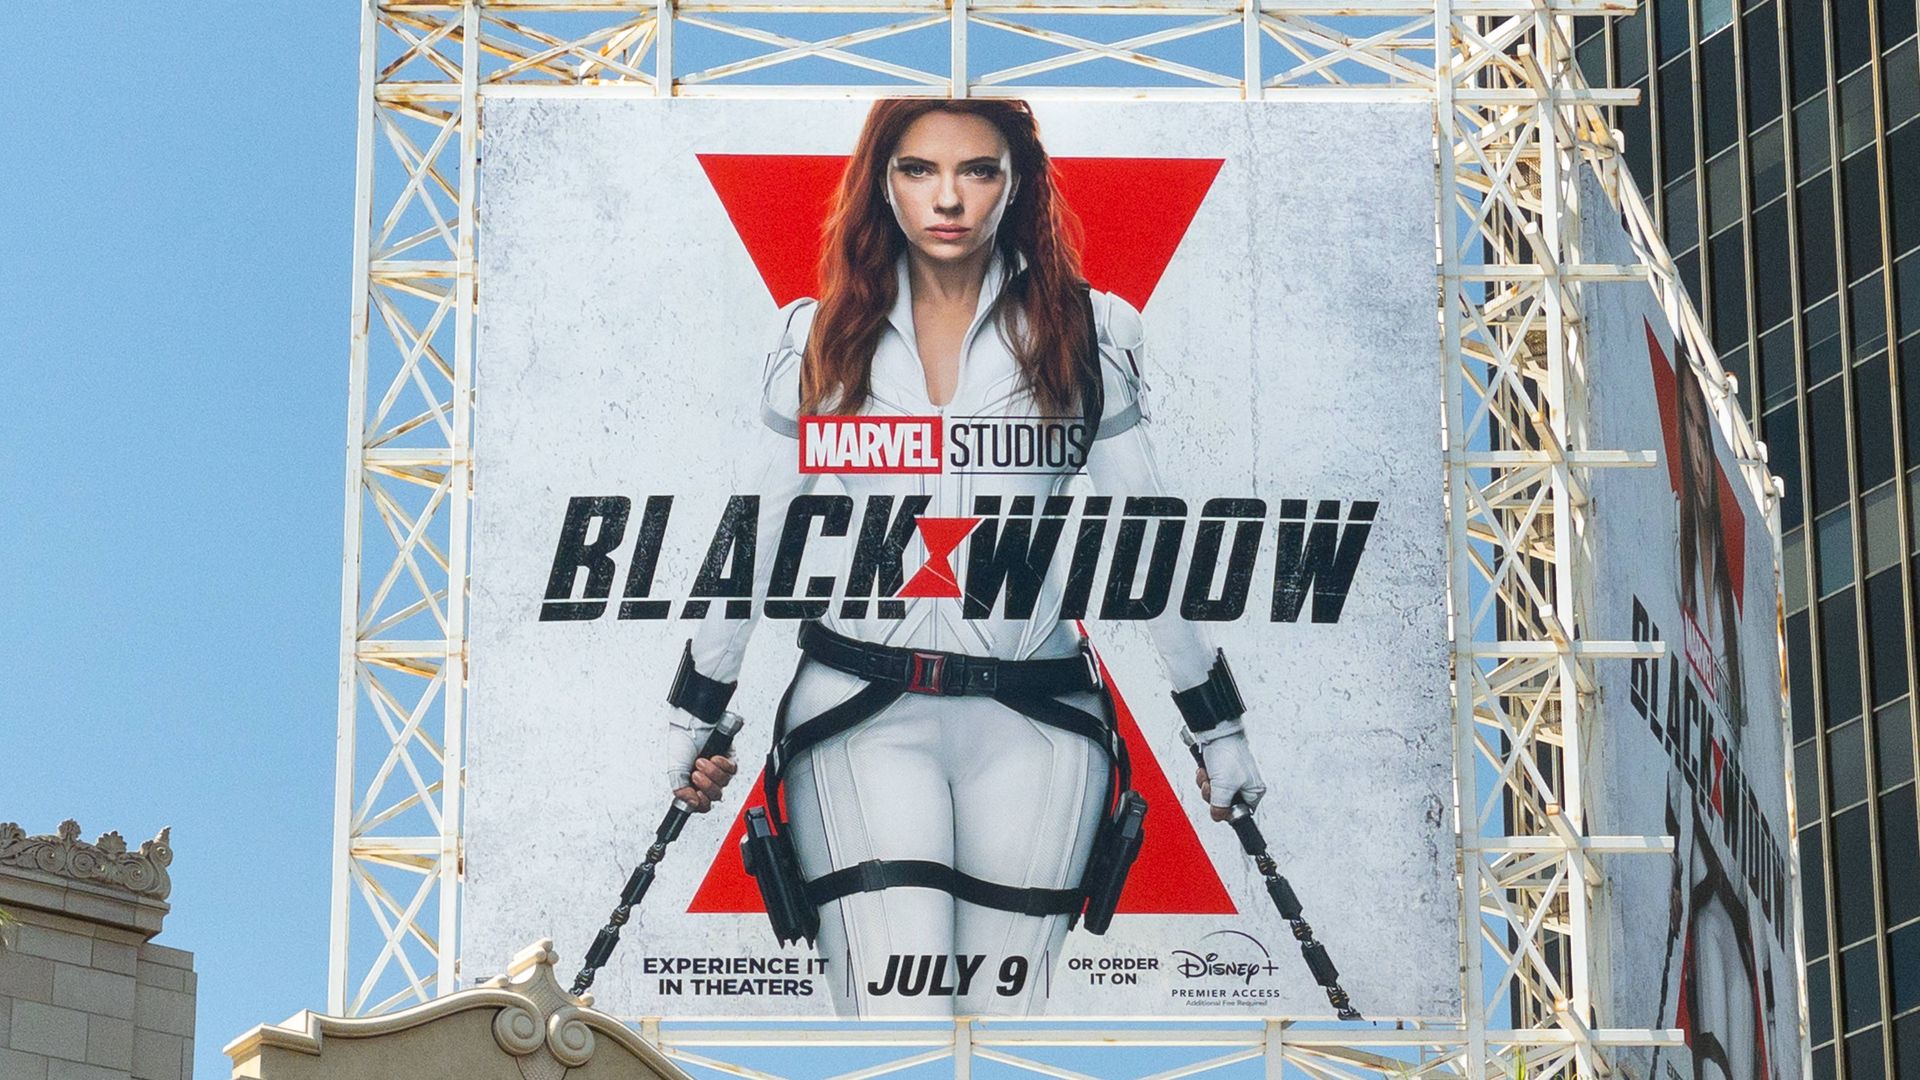 Scarlett Johansson, Disney Settle 'Black Widow' Lawsuit